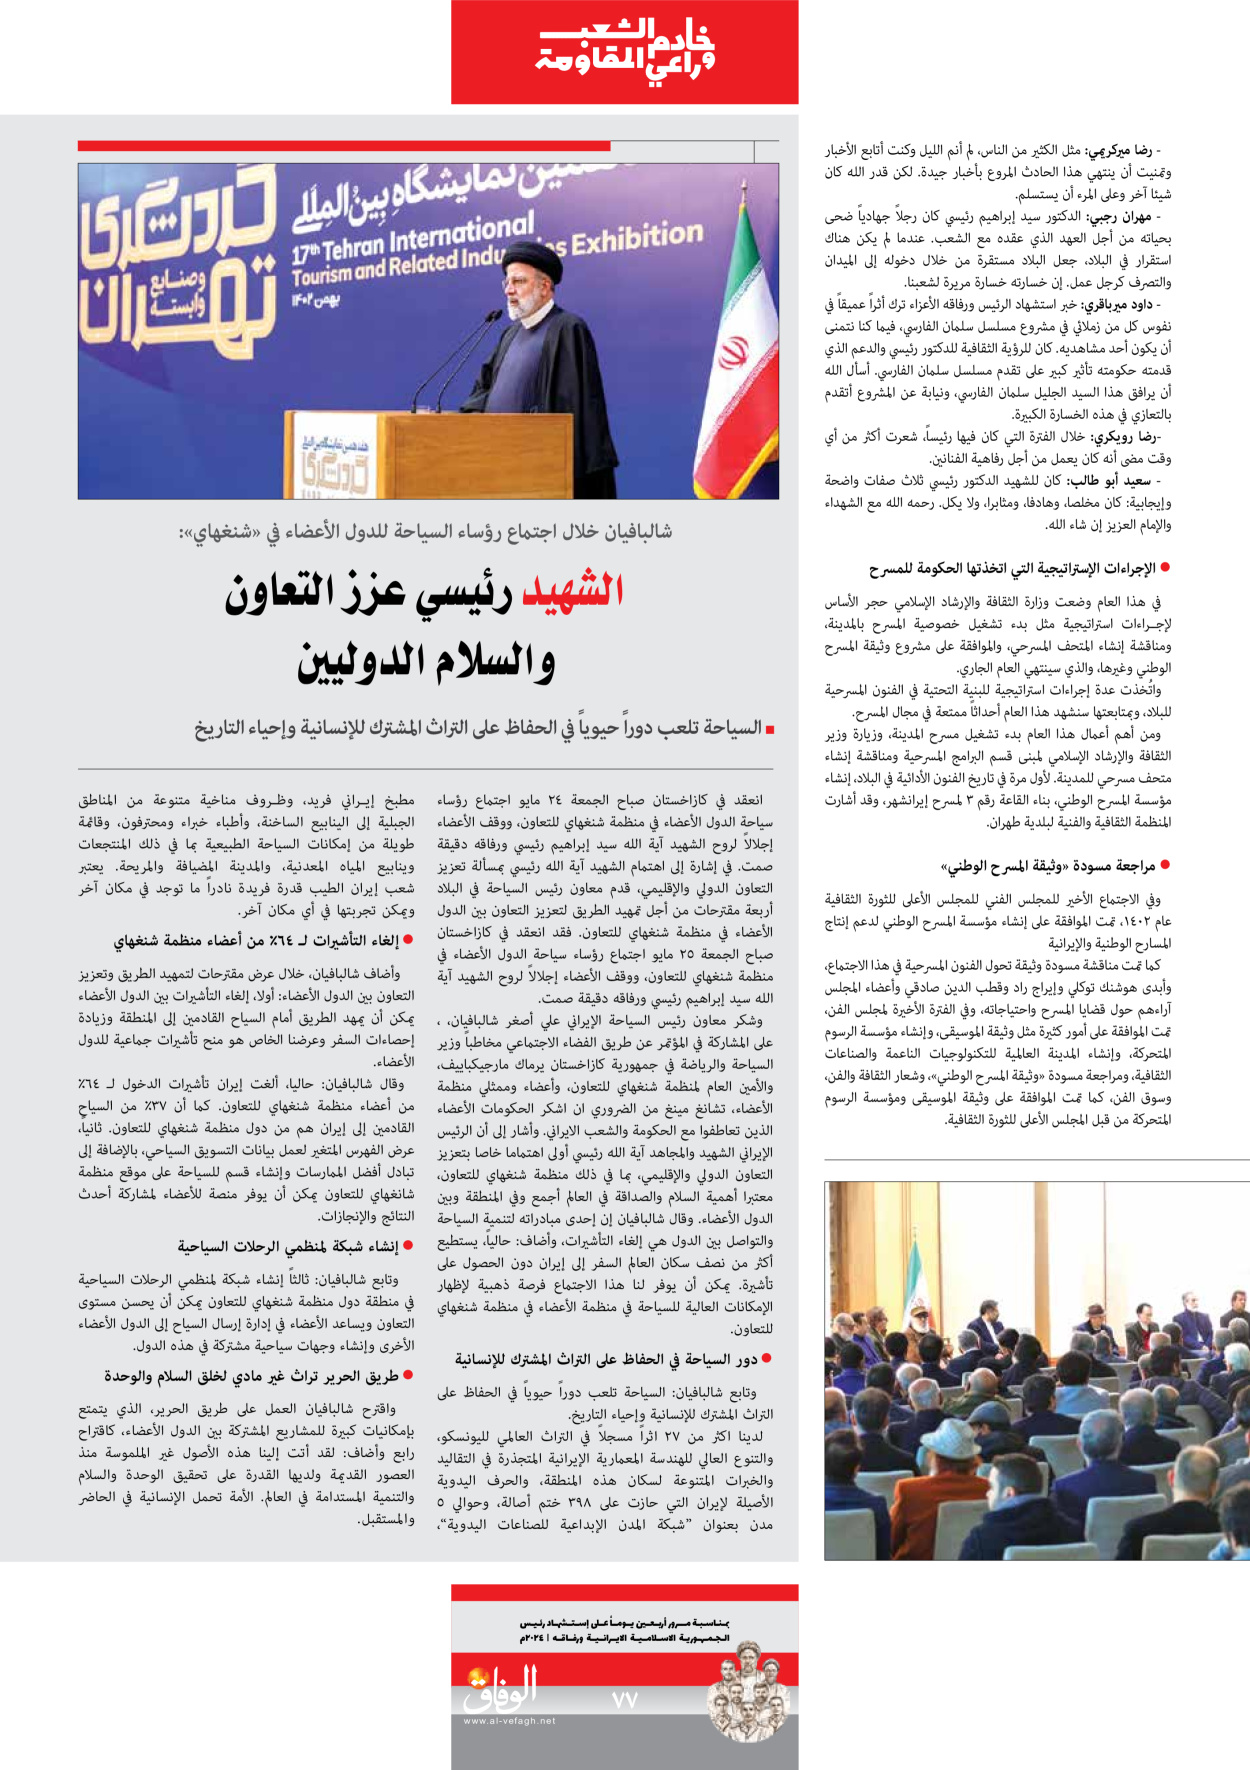 صحیفة ایران الدولیة الوفاق - ملحق ویژه نامه چهلم شهید رییسی - ٢٩ يونيو ٢٠٢٤ - الصفحة ۷۷